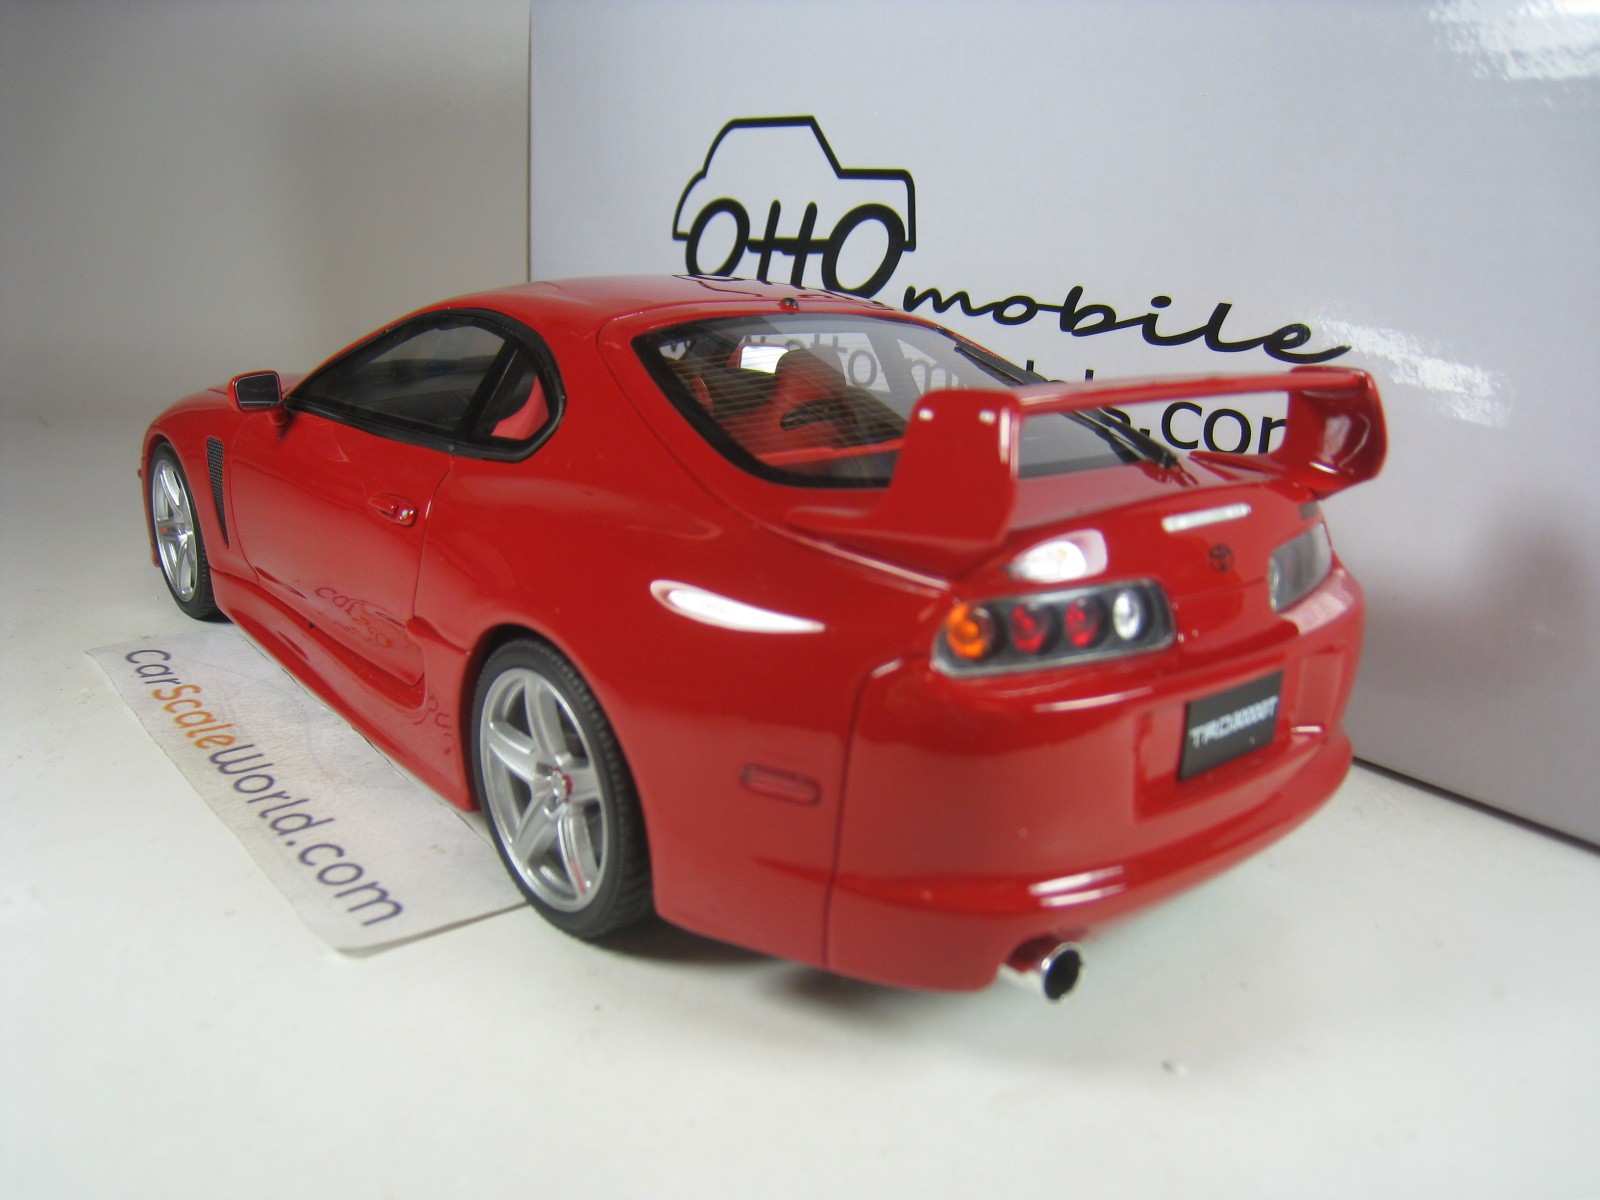 Otto mobile 1:18 scale OT879 Toyota Supra 3000 GT TRD RED – Mobile Garage HK